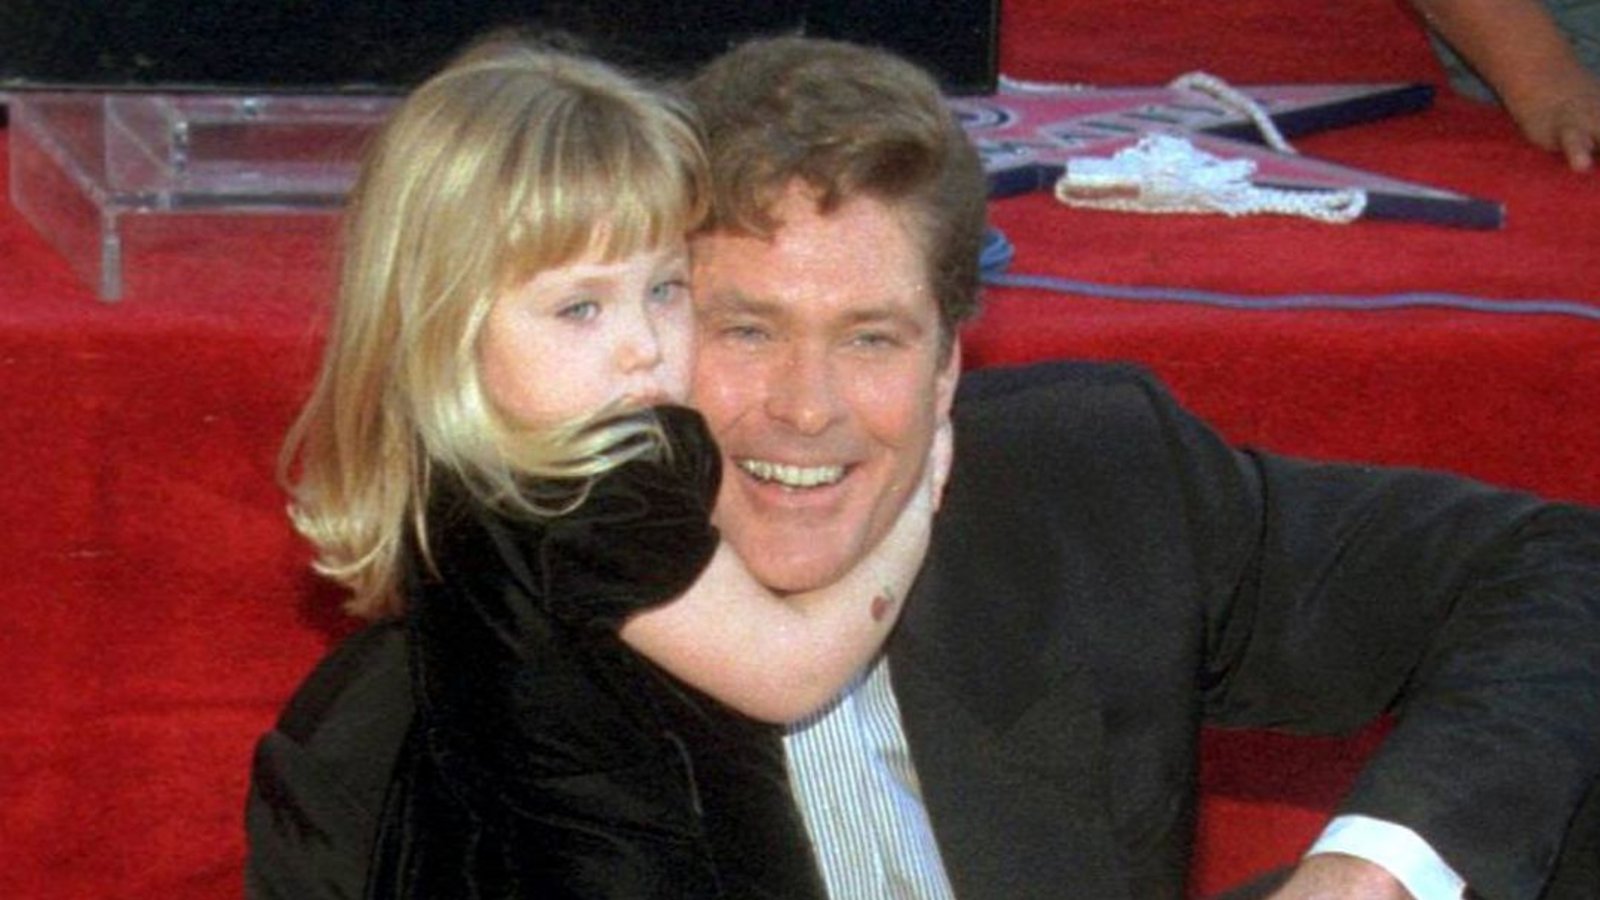 Nicht ohne meinen Papa: US-Sänger und Schauspieler David Hasselhoff hat zwei Töchter. Die jüngere heißt Hayley.Foto: IMAGO / UPI Photo